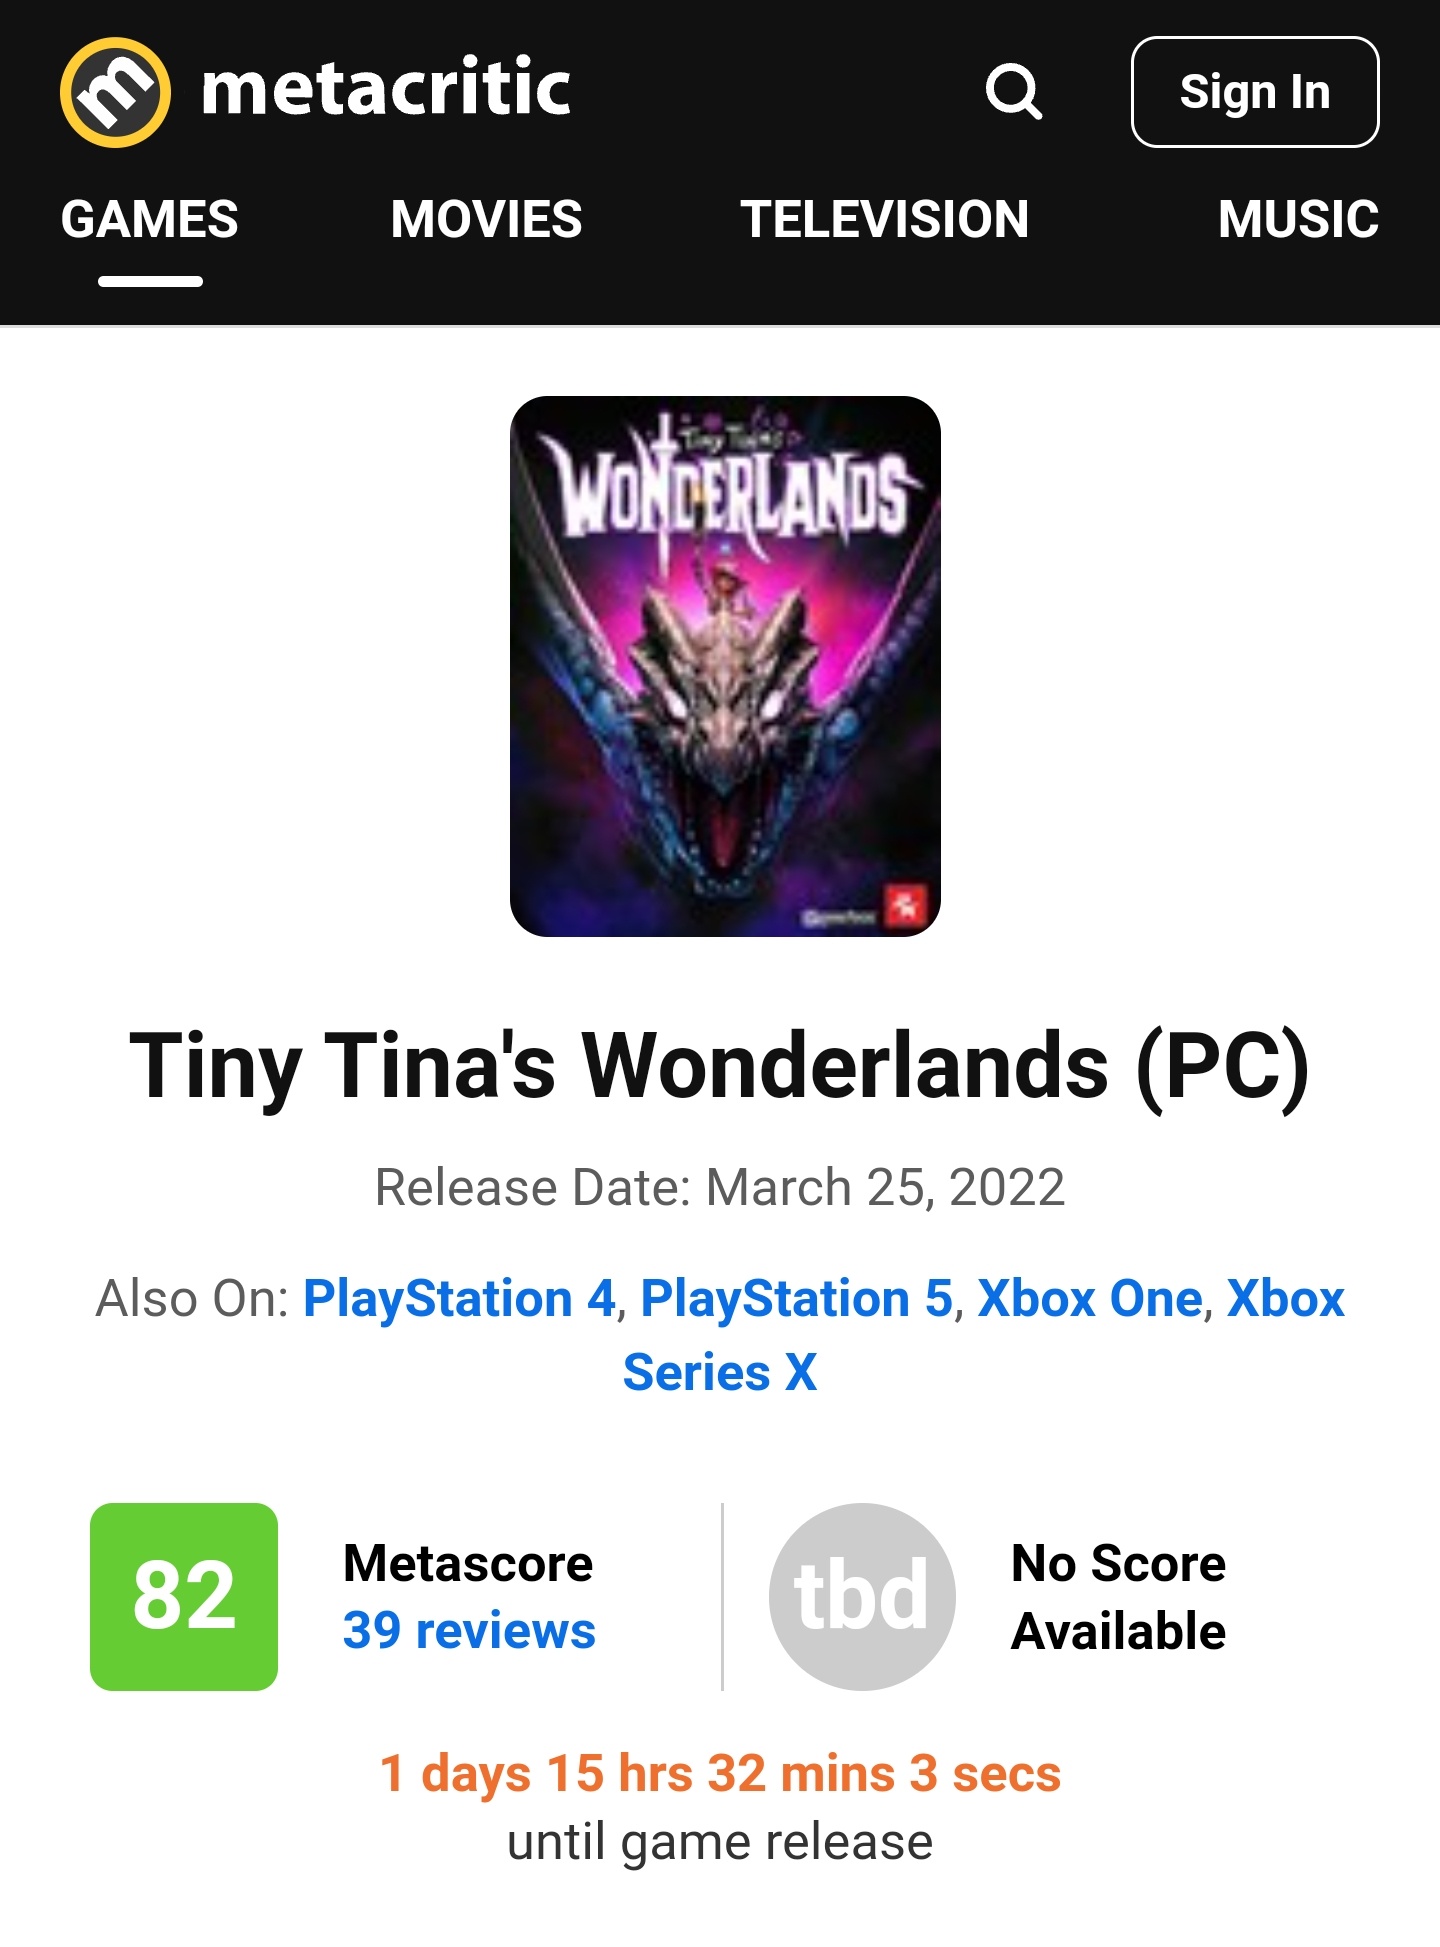 Tiny Tina's Wonderlands - Metacritic